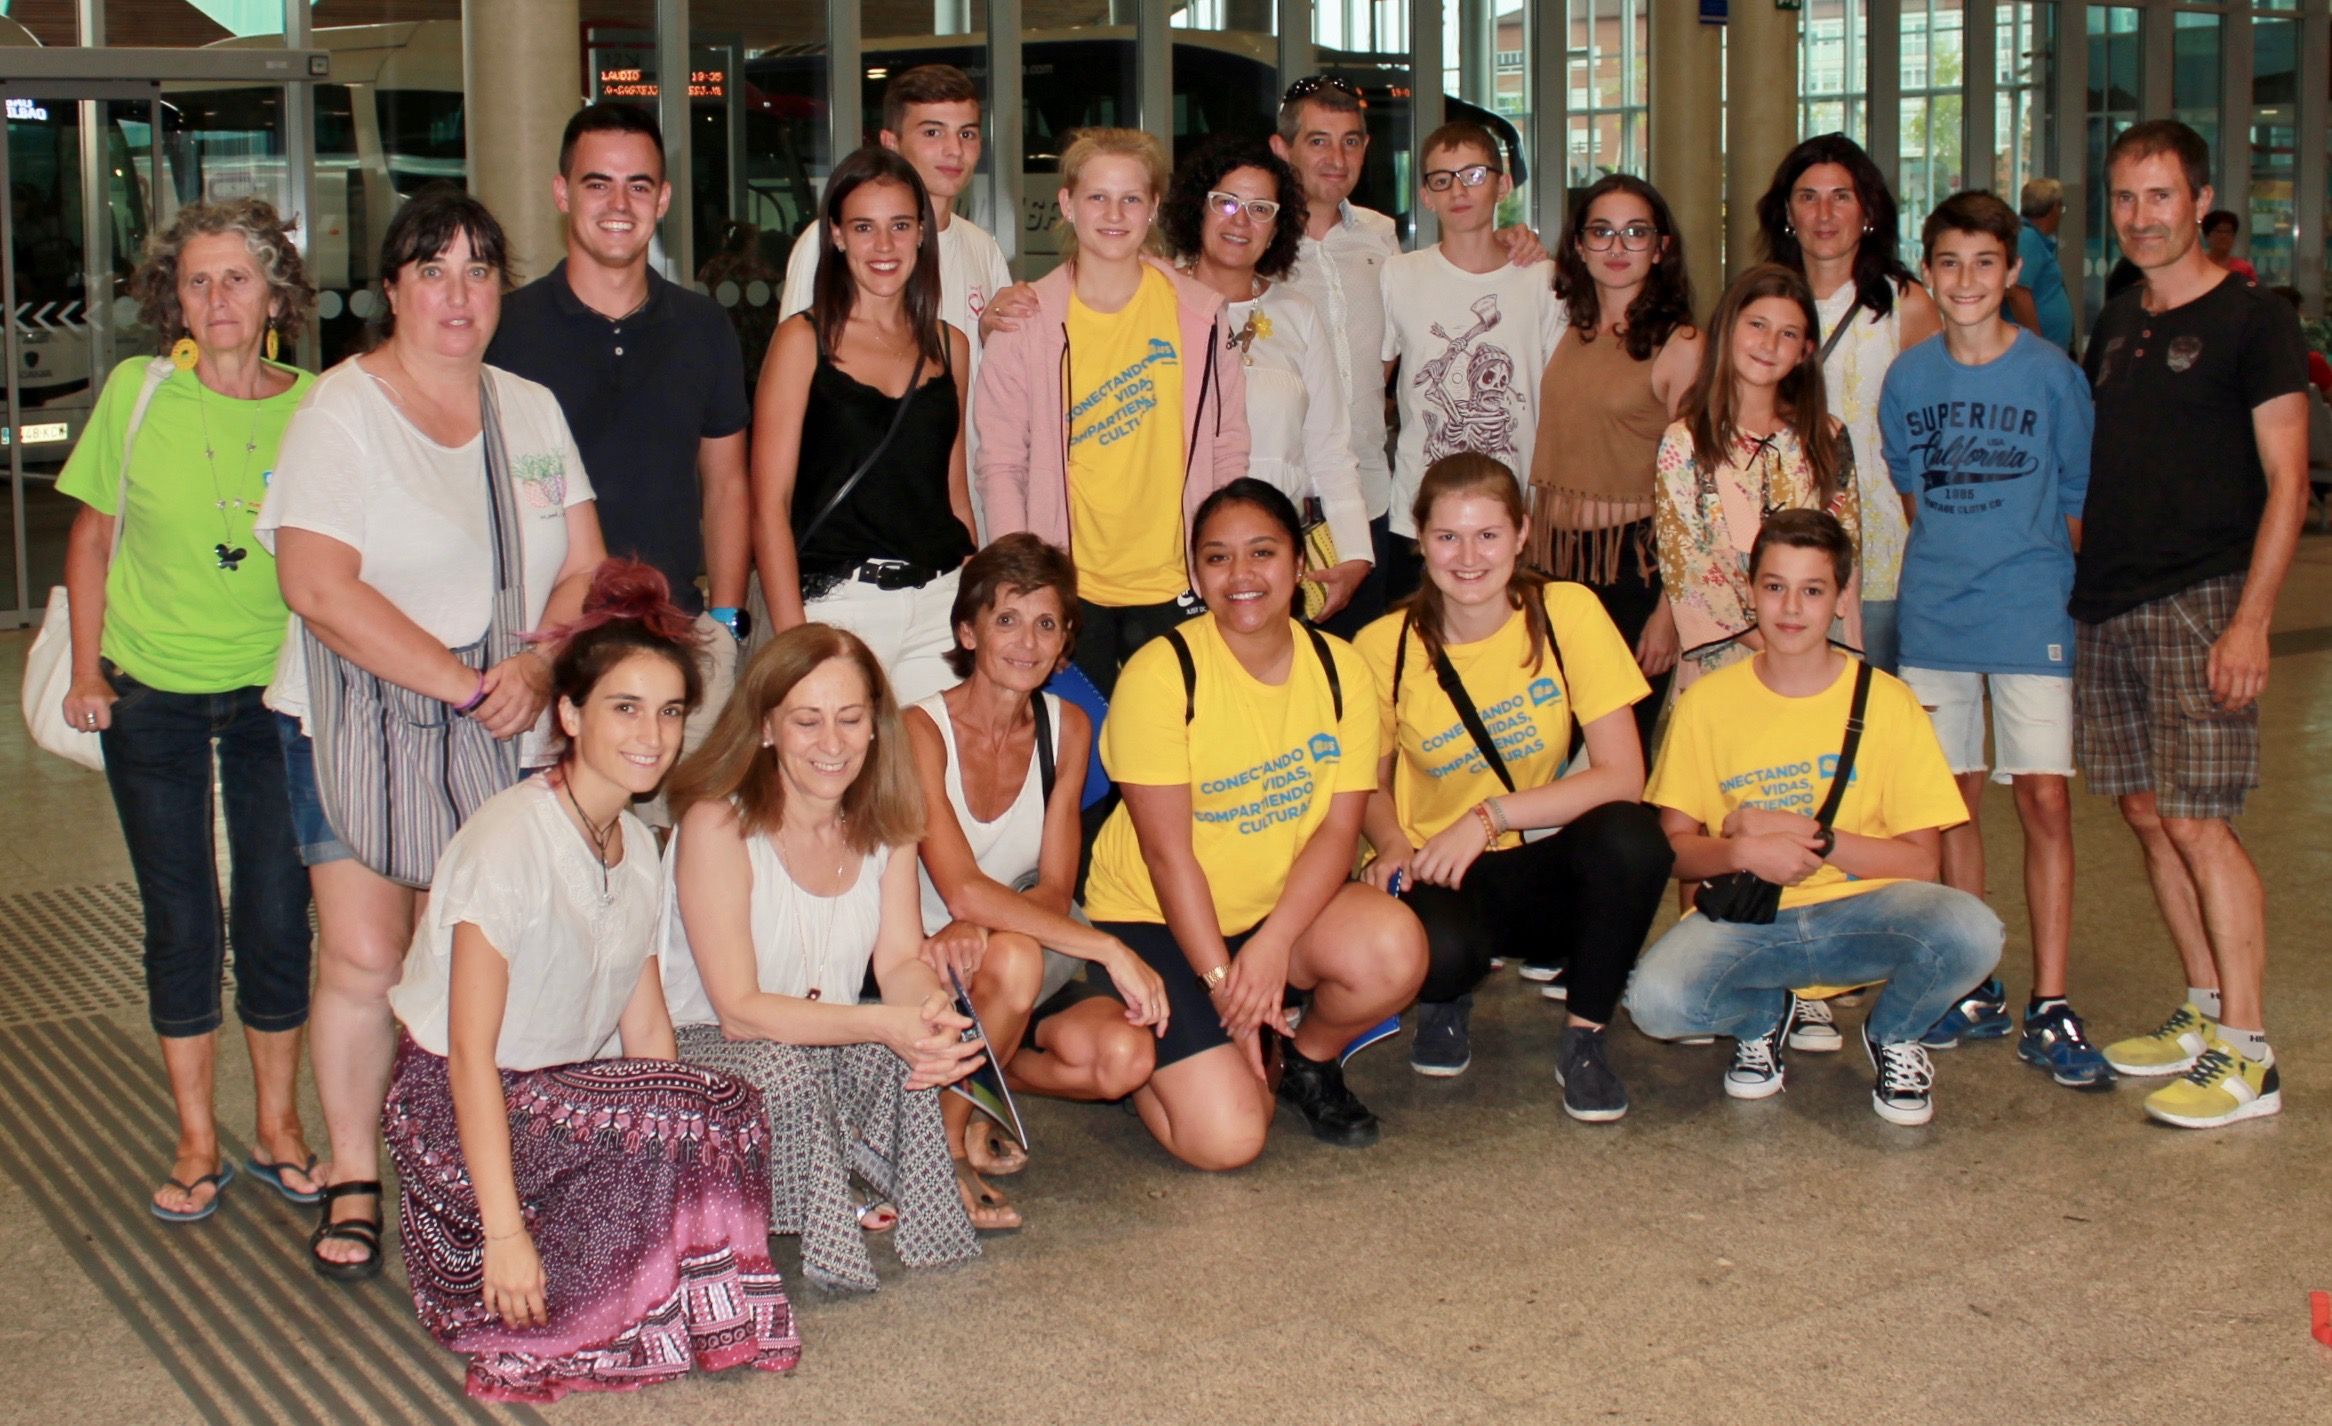 SD Eibar Fundazioa apoya la difusión de becas para jóvenes a través de la ONG AFS Intercultura